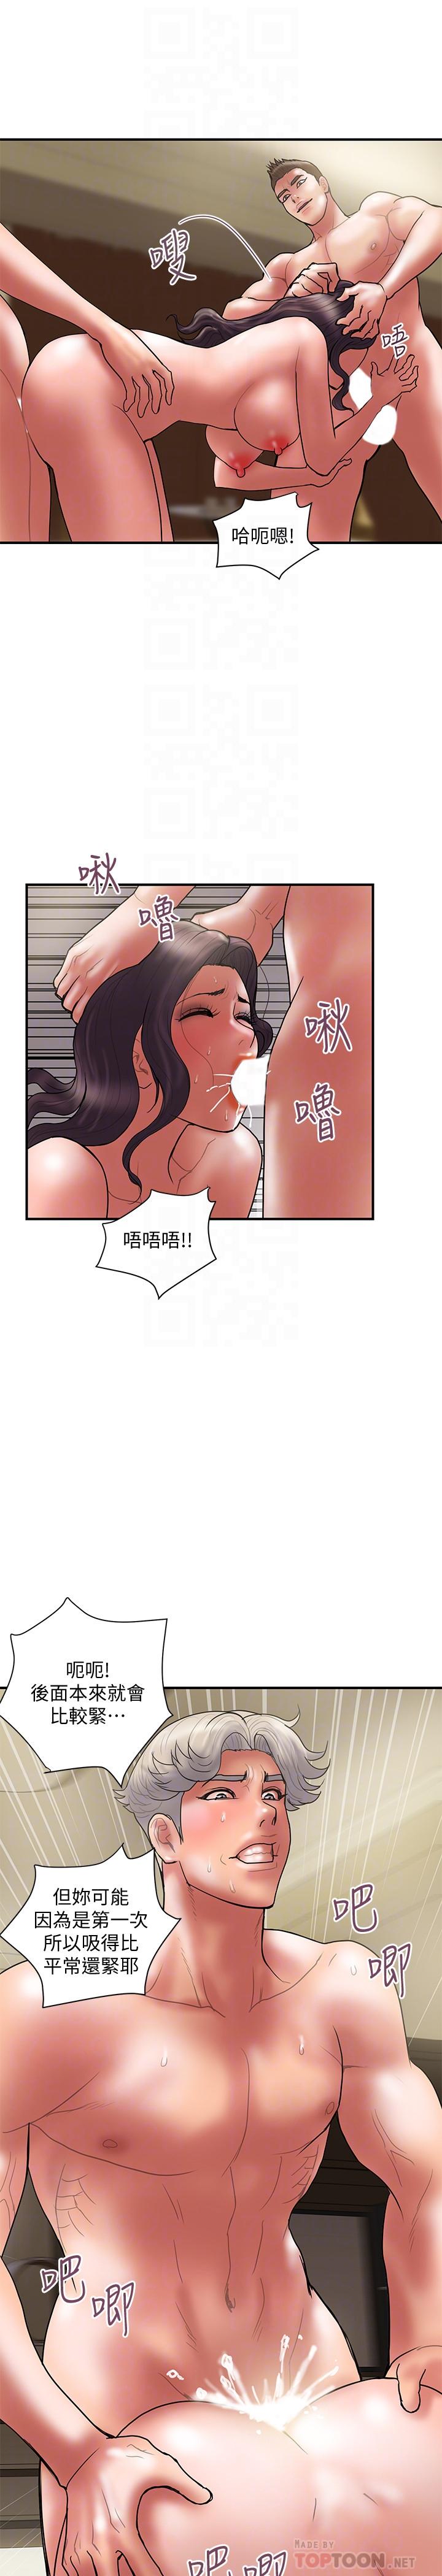 韩国污漫画 計劃出軌 最终话-变态们的盛宴 16